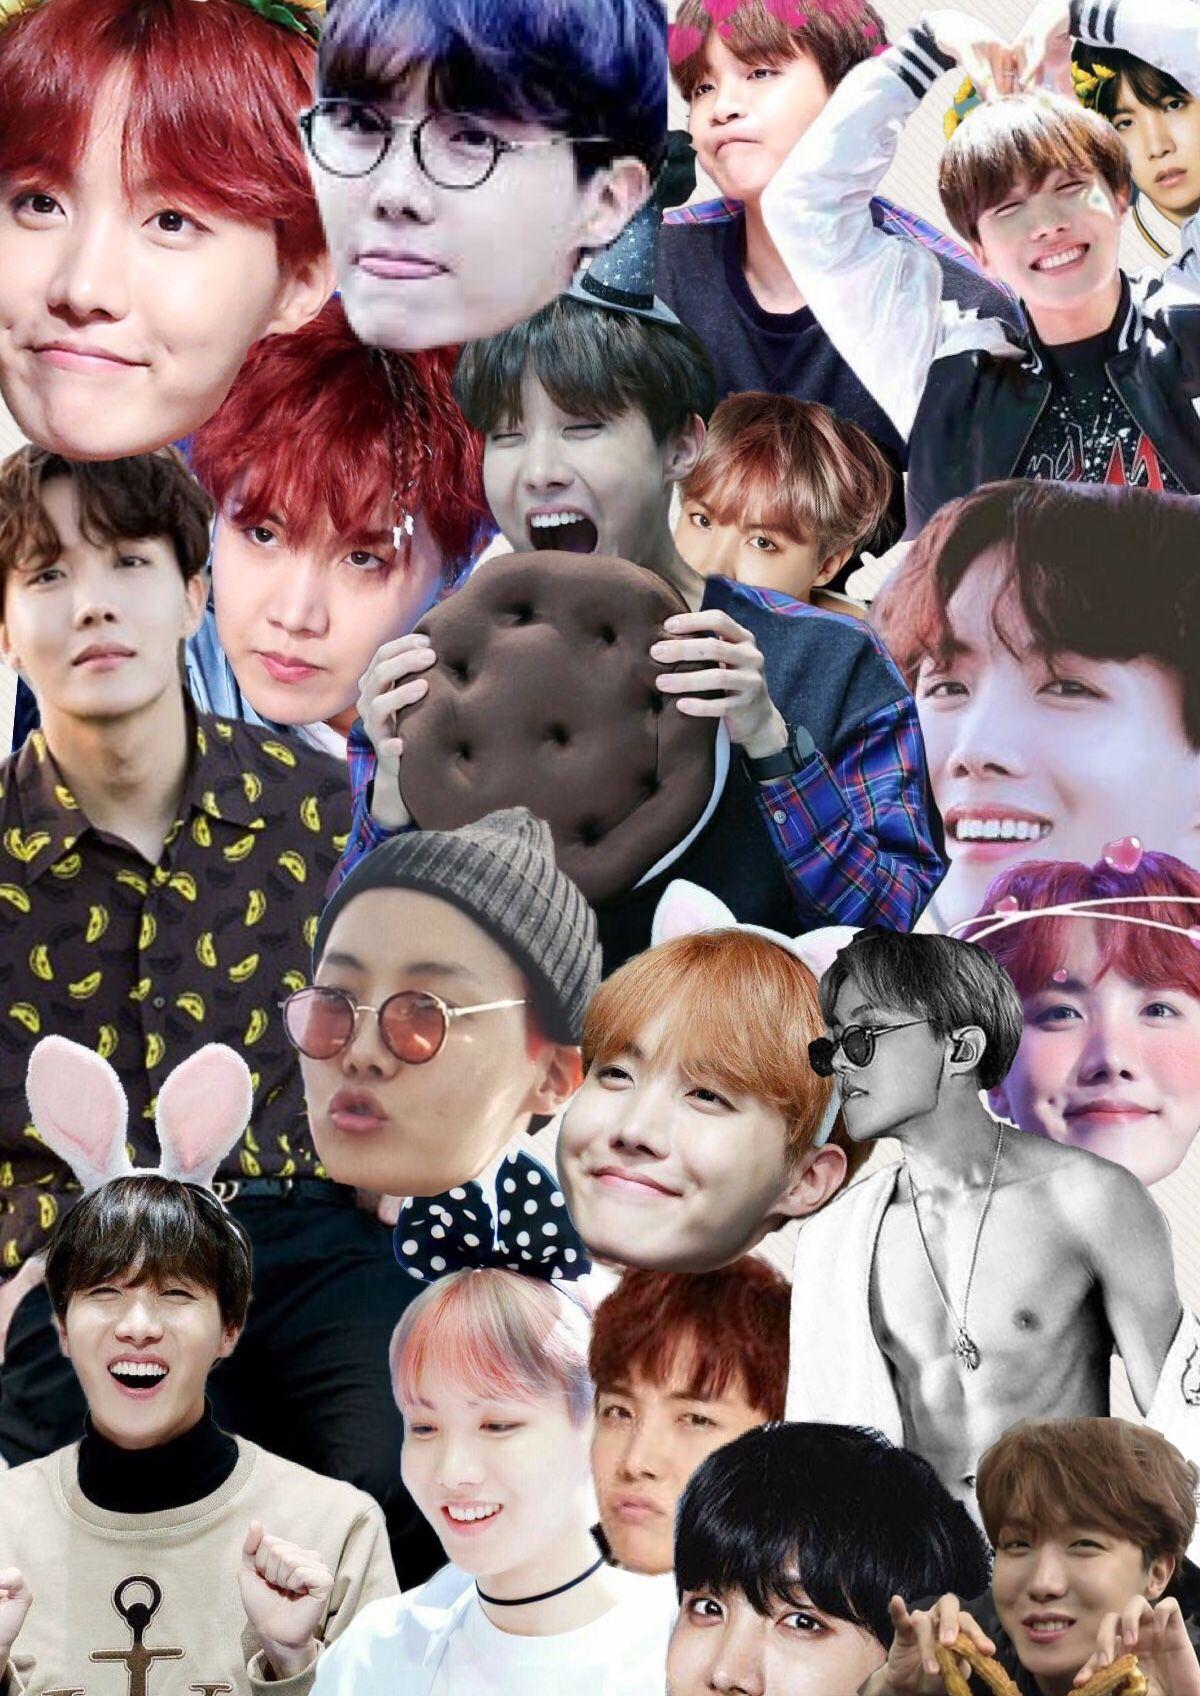 Cute Jhope collage wallpaper. BTS. Bts, Jhope cute